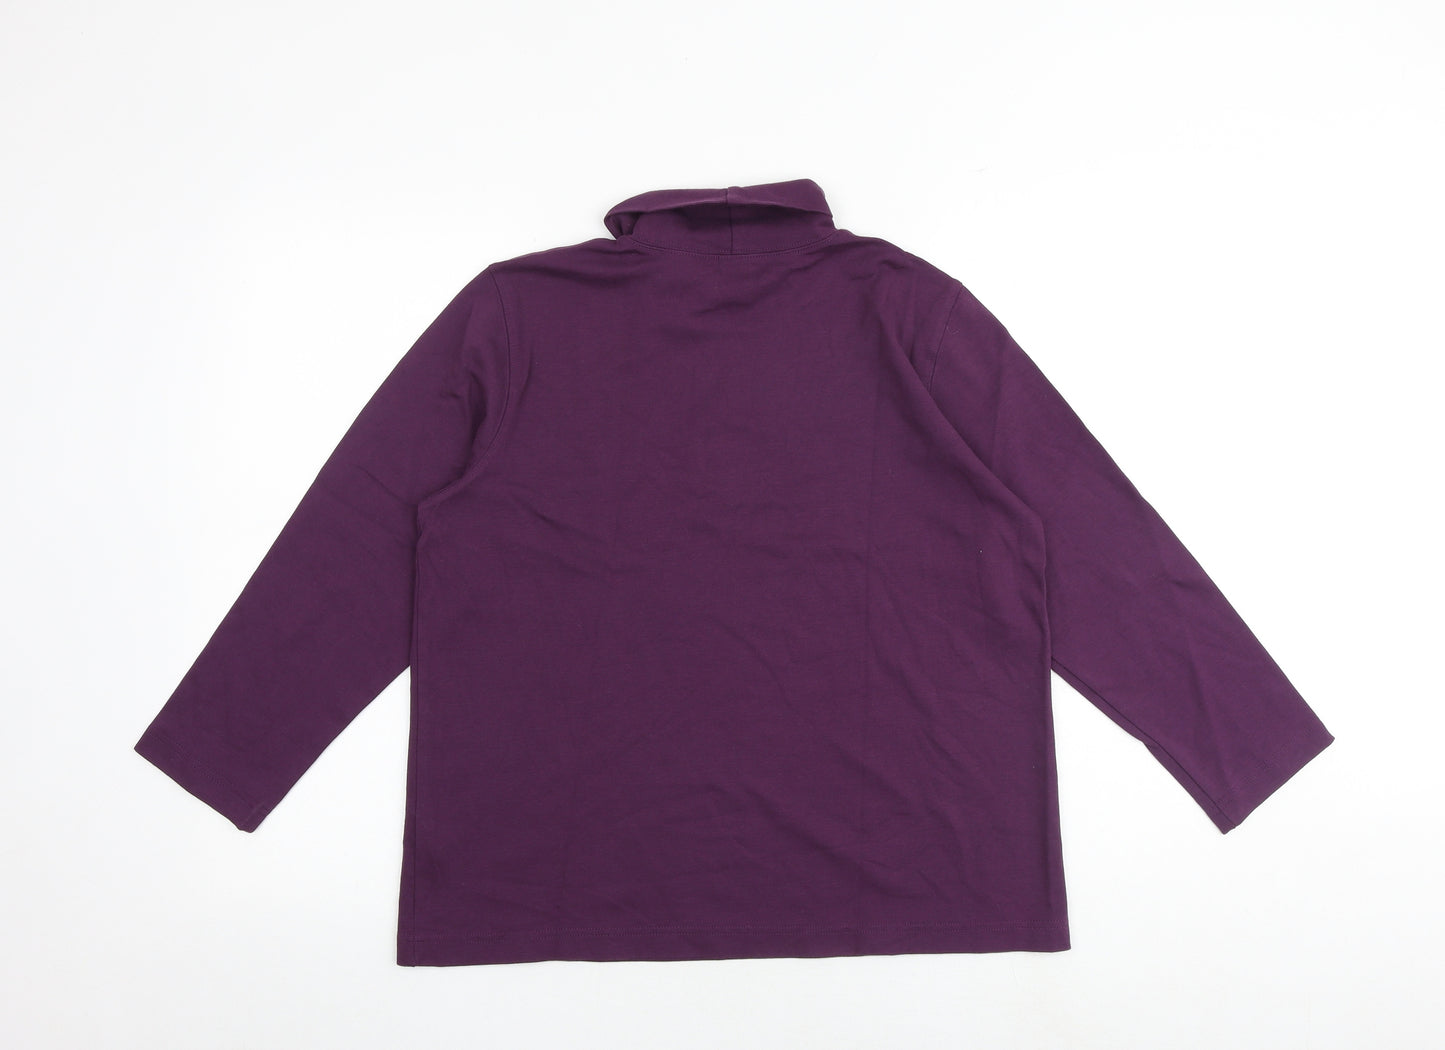 Lands' End Womens Purple 100% Cotton Basic T-Shirt Size M Roll Neck - Size 10-12